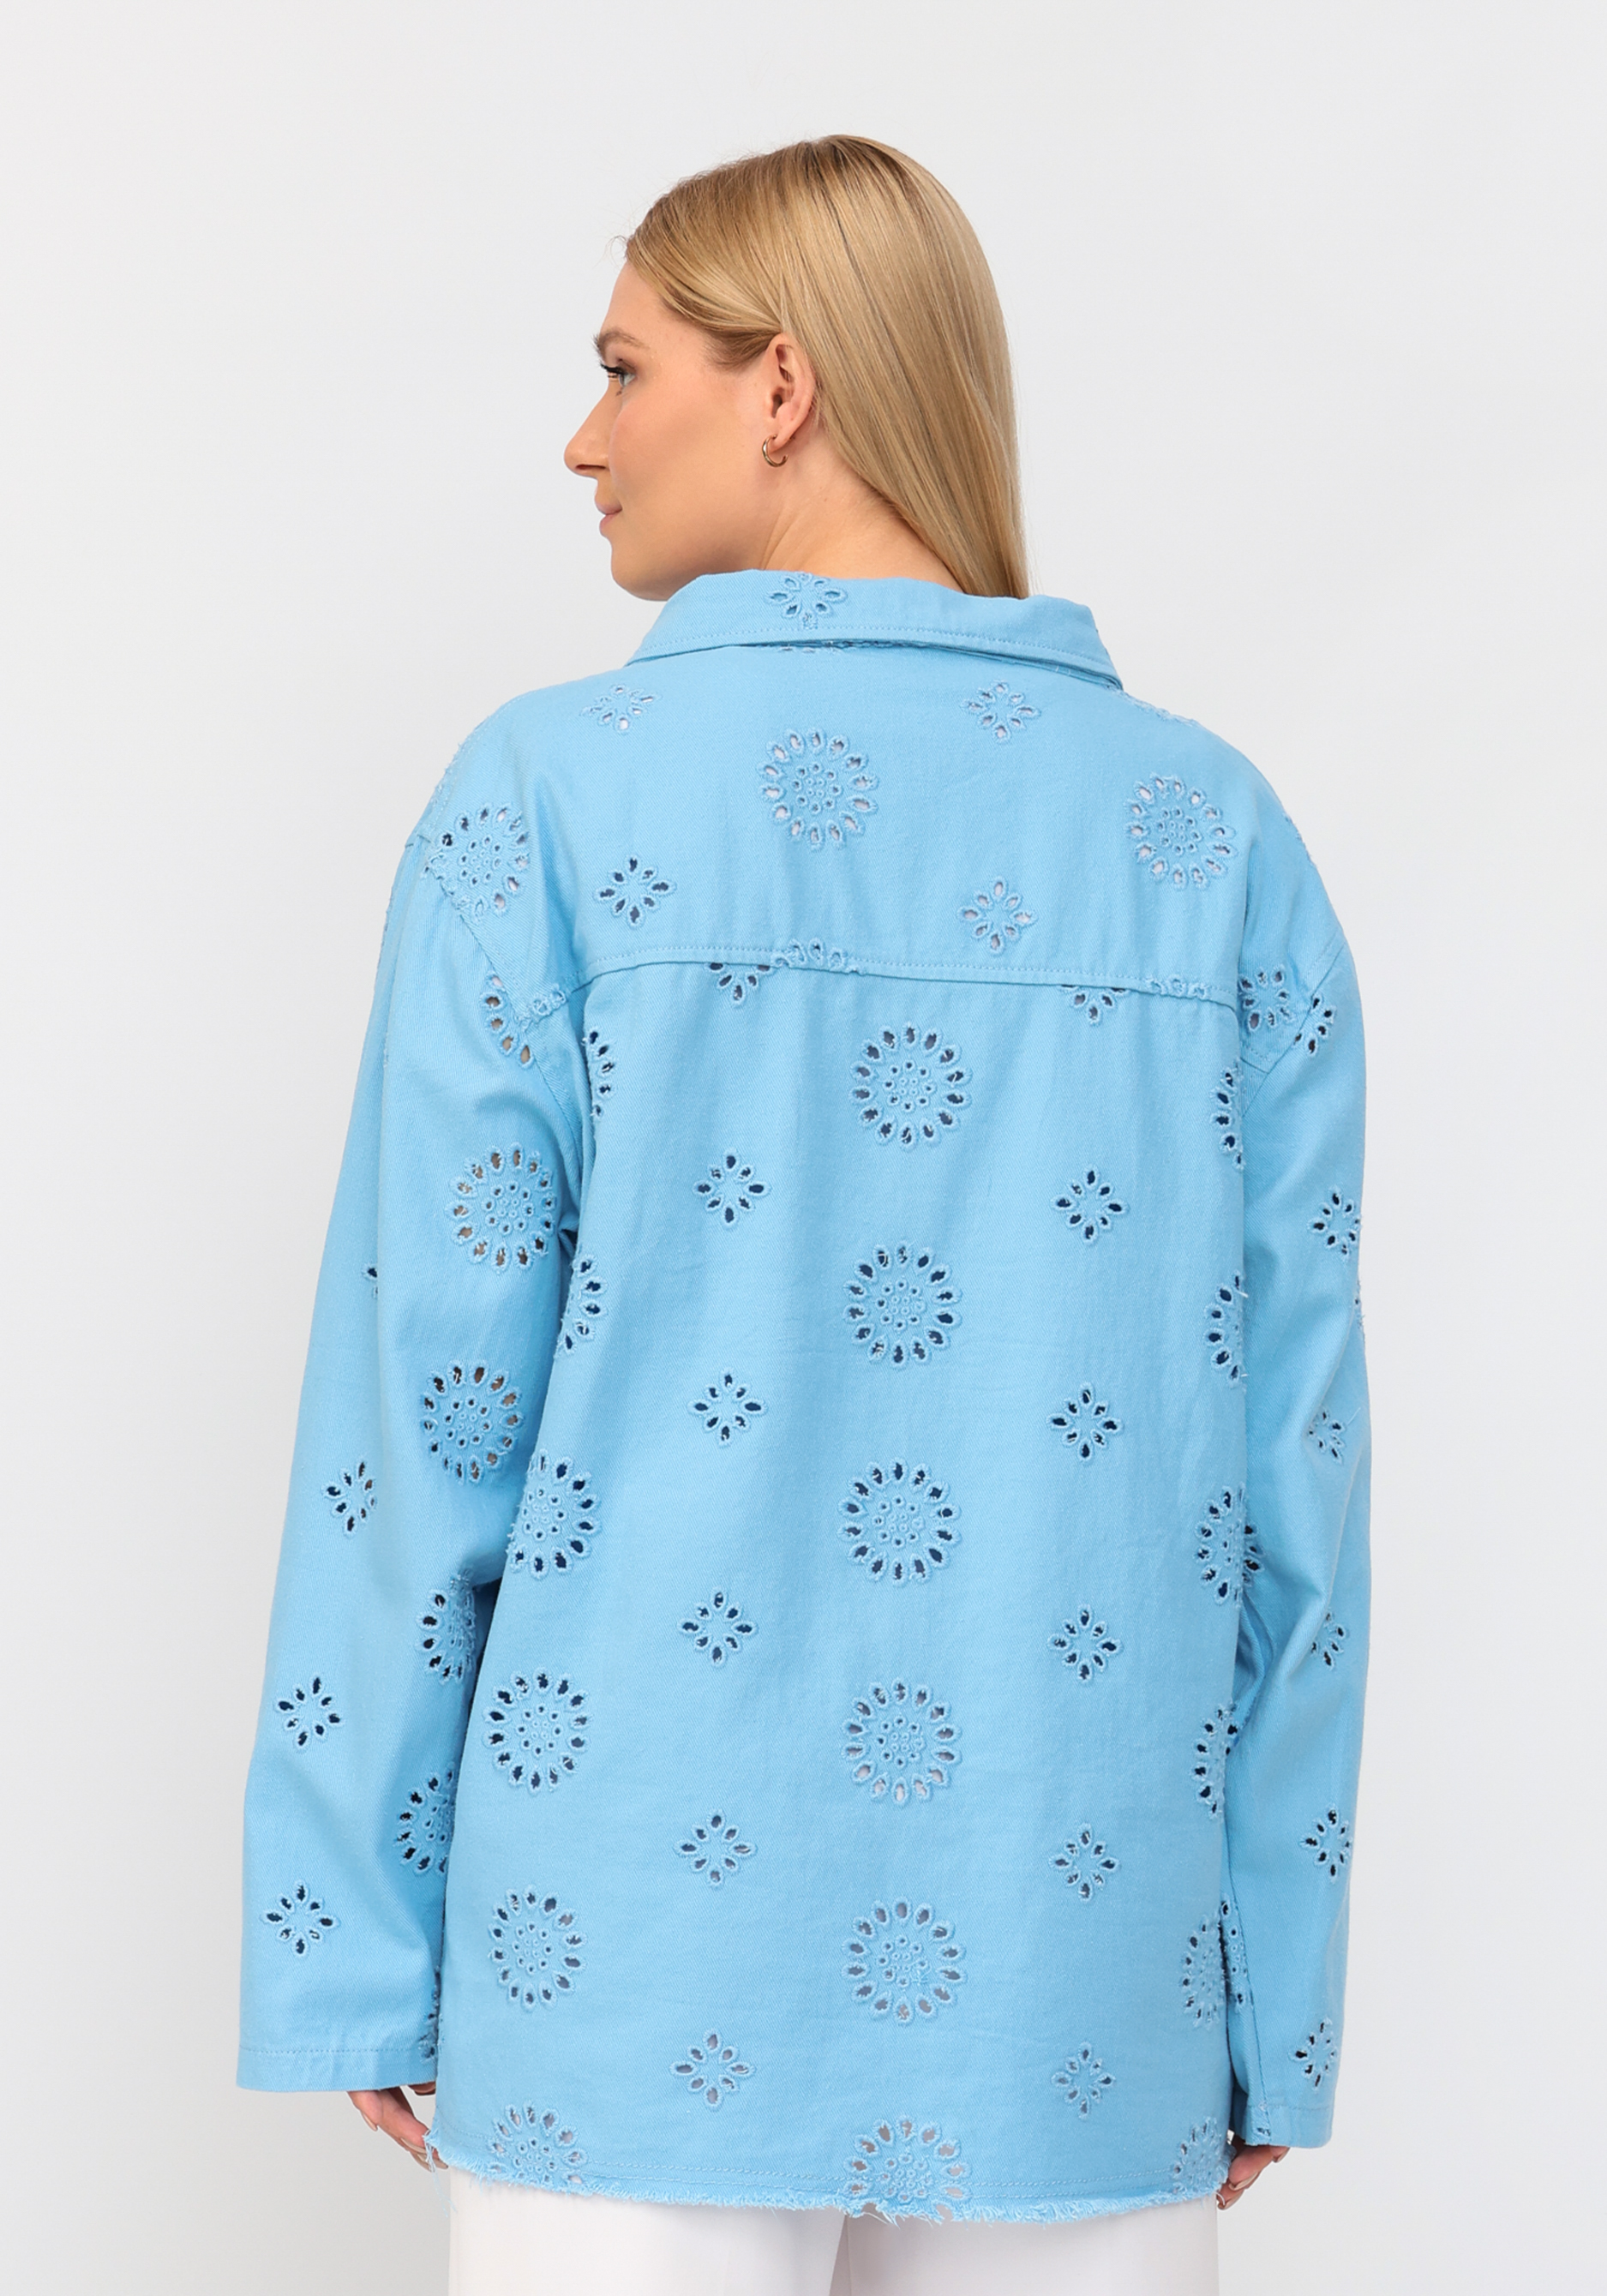 Джинсовая куртка с ришелье No name, размер 54-56, цвет голубой - фото 9